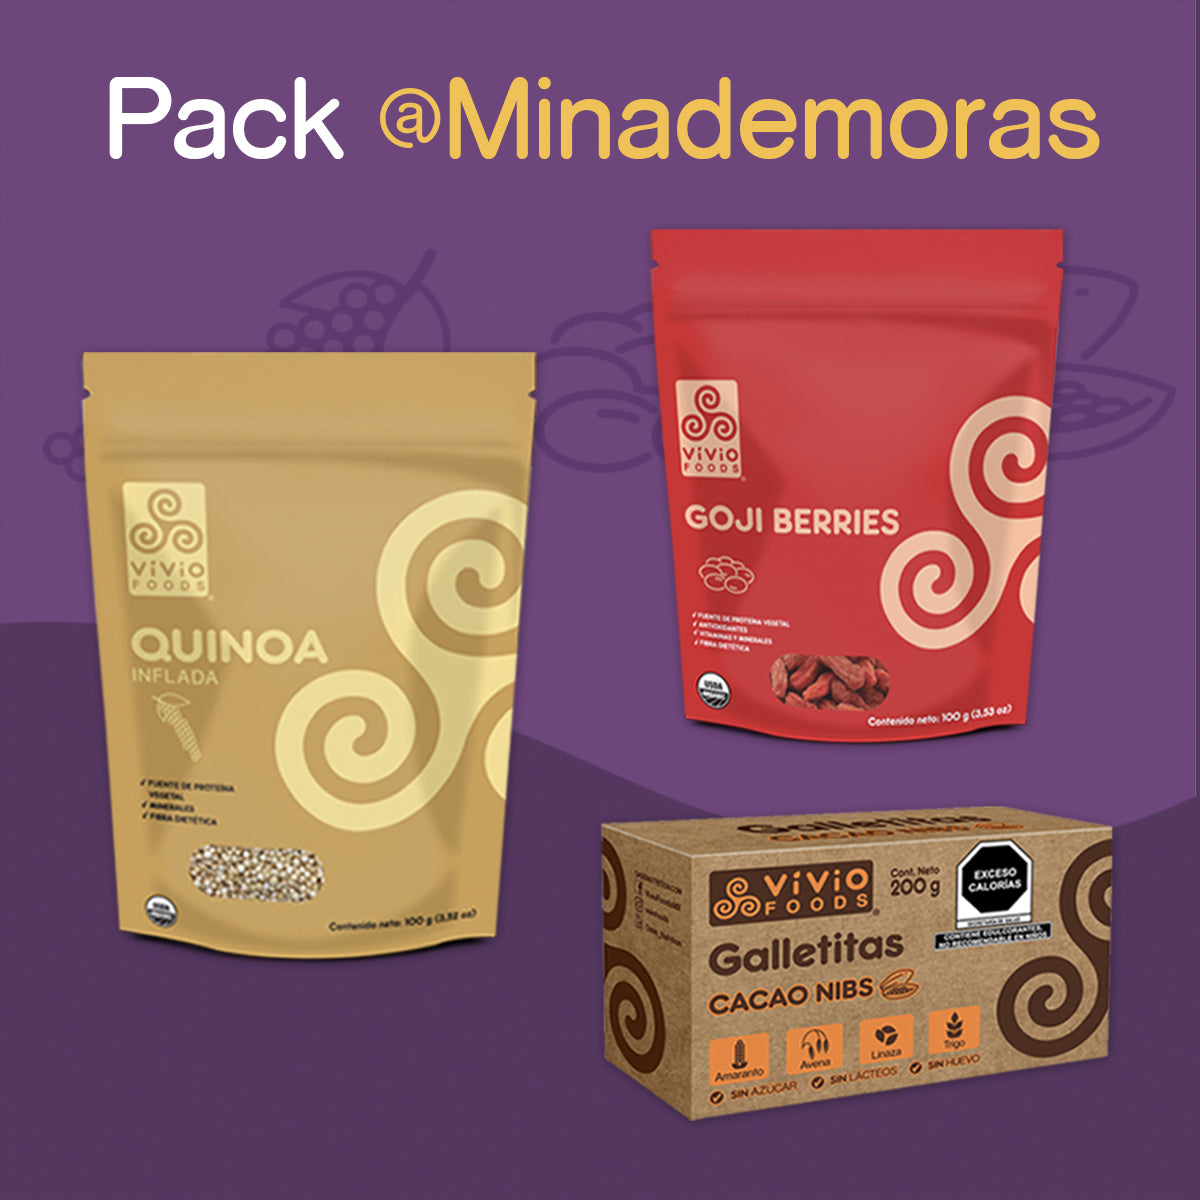 Pack @MinaDeMoras:  Quinoa inflada + Goji berries + Galletas cacao nibs